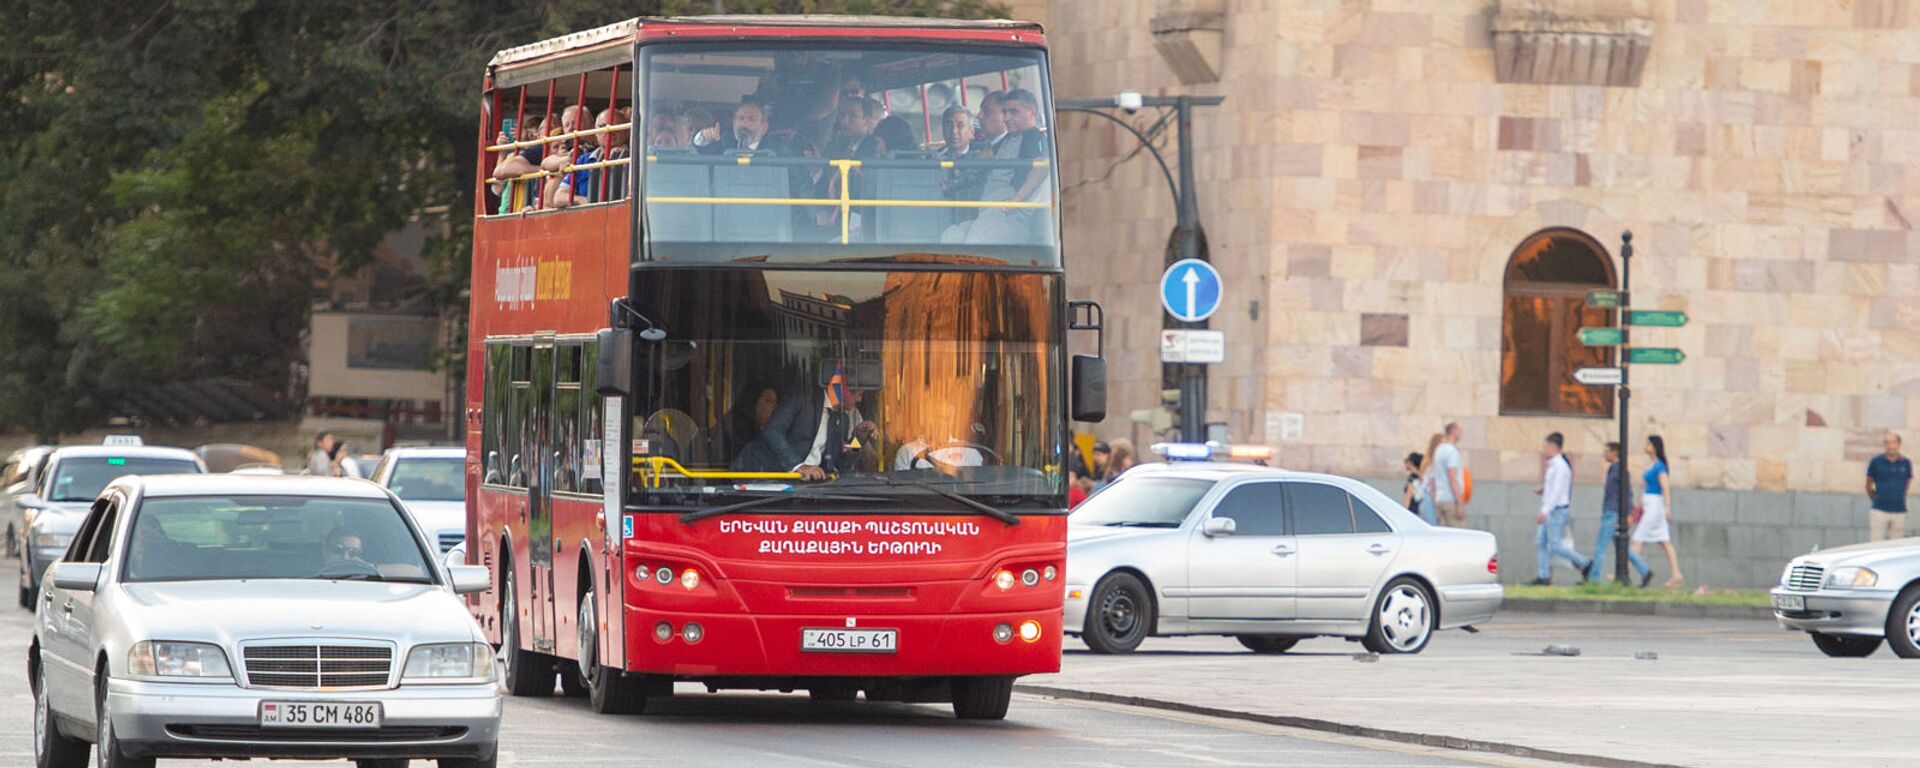 Премьер-министр Никол Пашинян в туристическом автобусе  - Sputnik Արմենիա, 1920, 28.08.2019